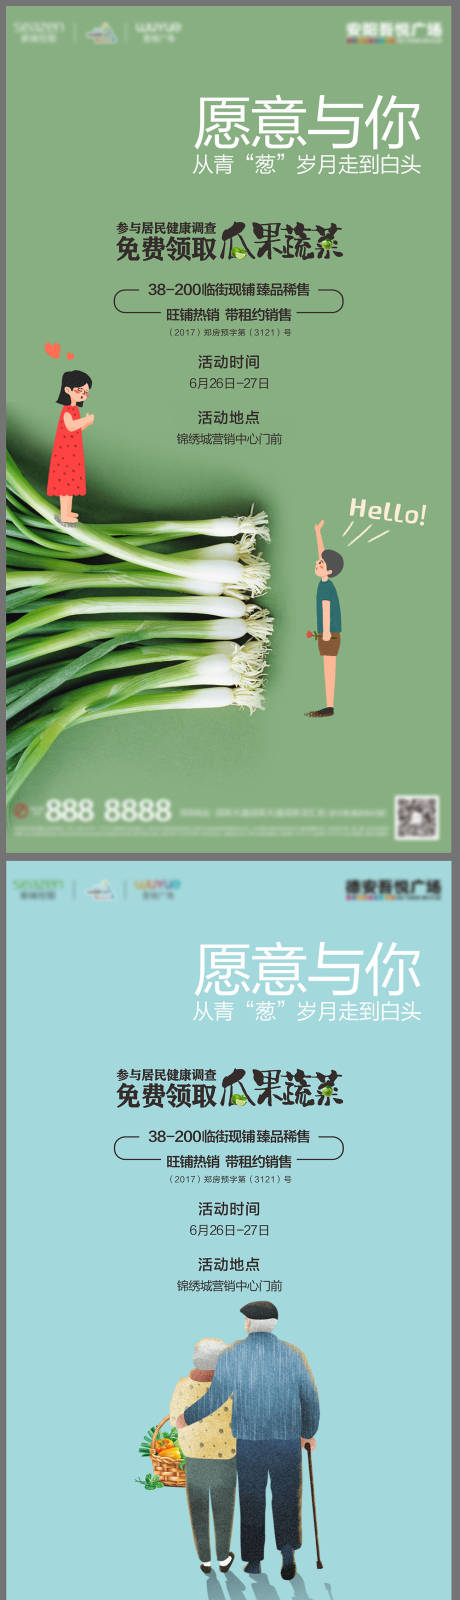 地产免费领取瓜果蔬菜暖场活动系列海报